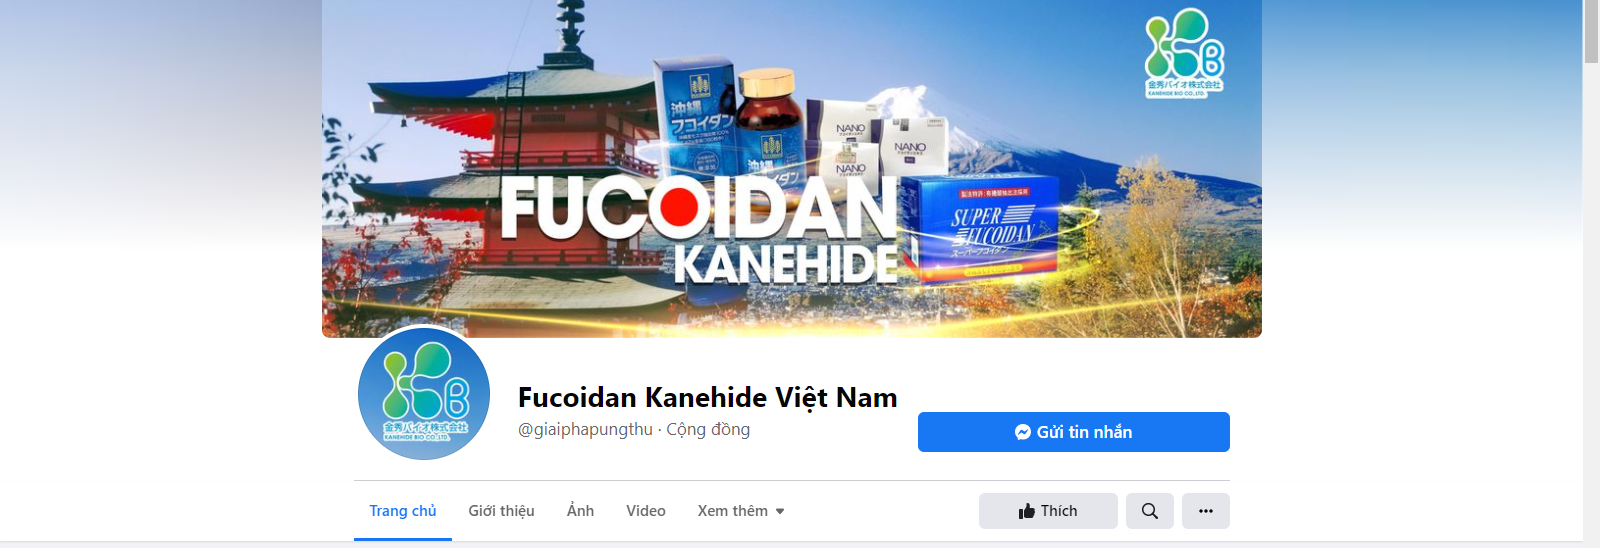 Fanpage Fucoidan Kanehide Việt Nam